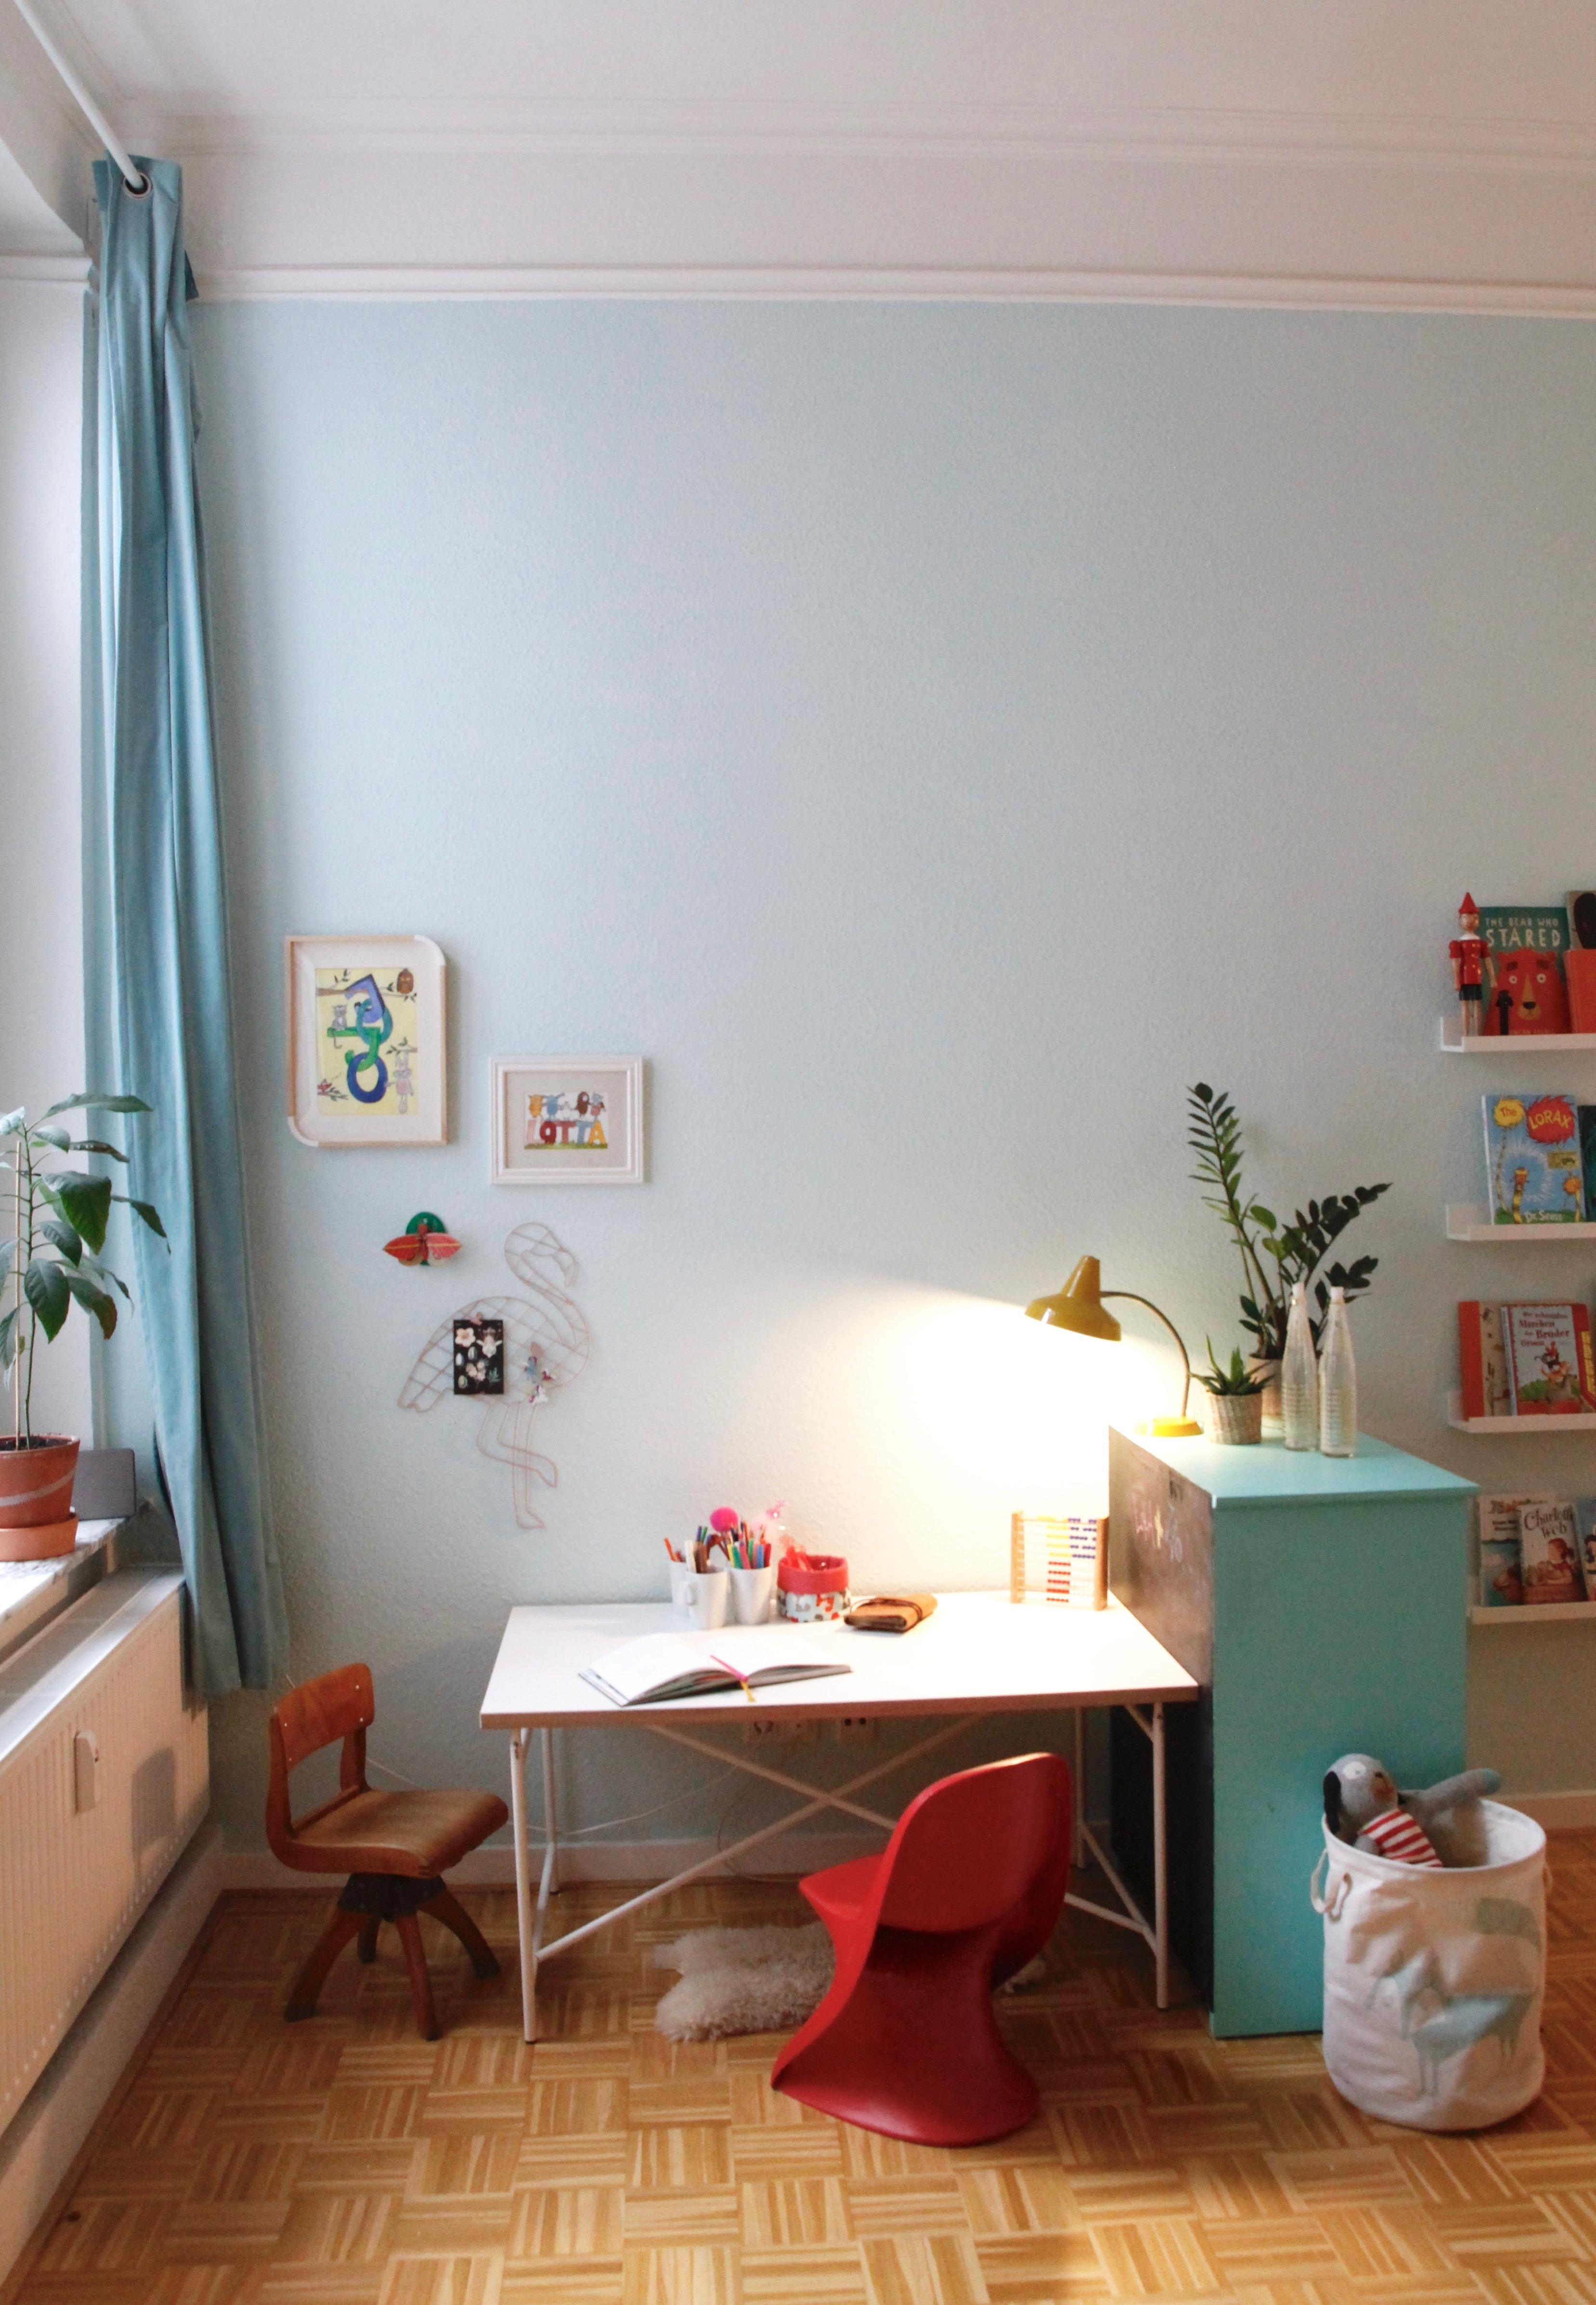 Der neue Mal- und Hausaufgabenplatz!
#kinderzimmer #eiermann #schreibtisch #altbau #casalino #wandfarbe #flamingo